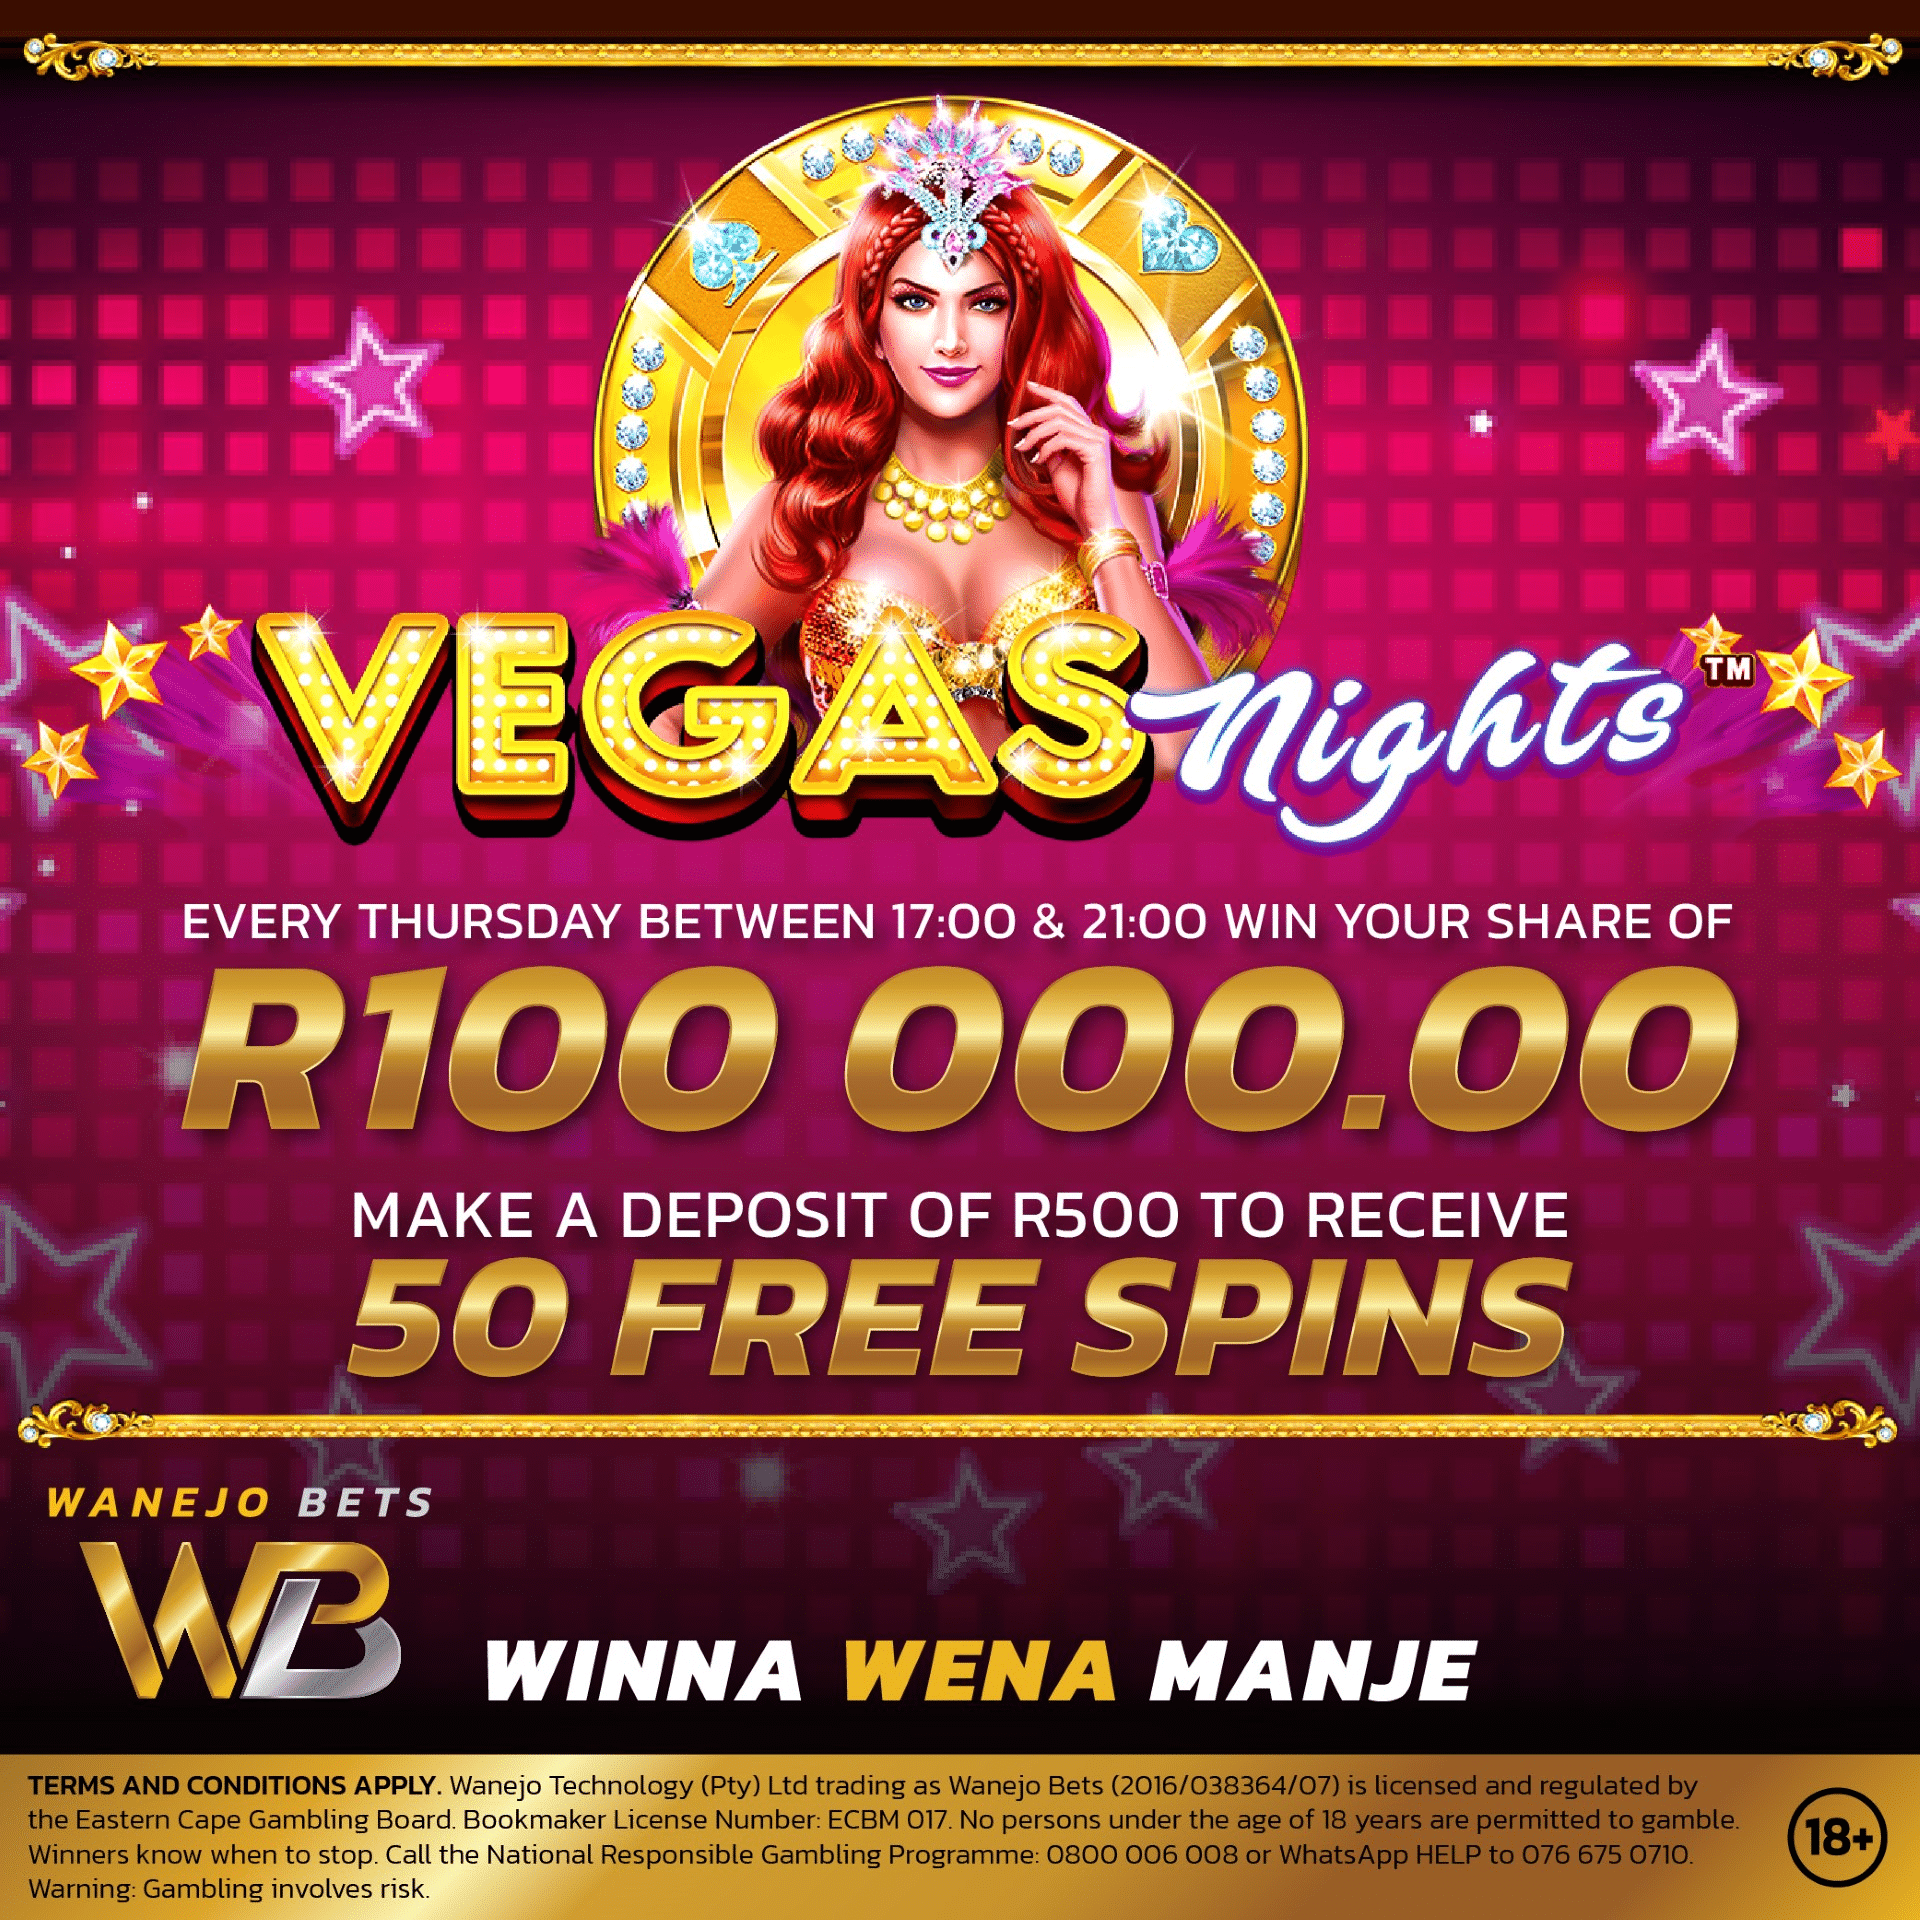 Wanejo Vegas Nights promotion